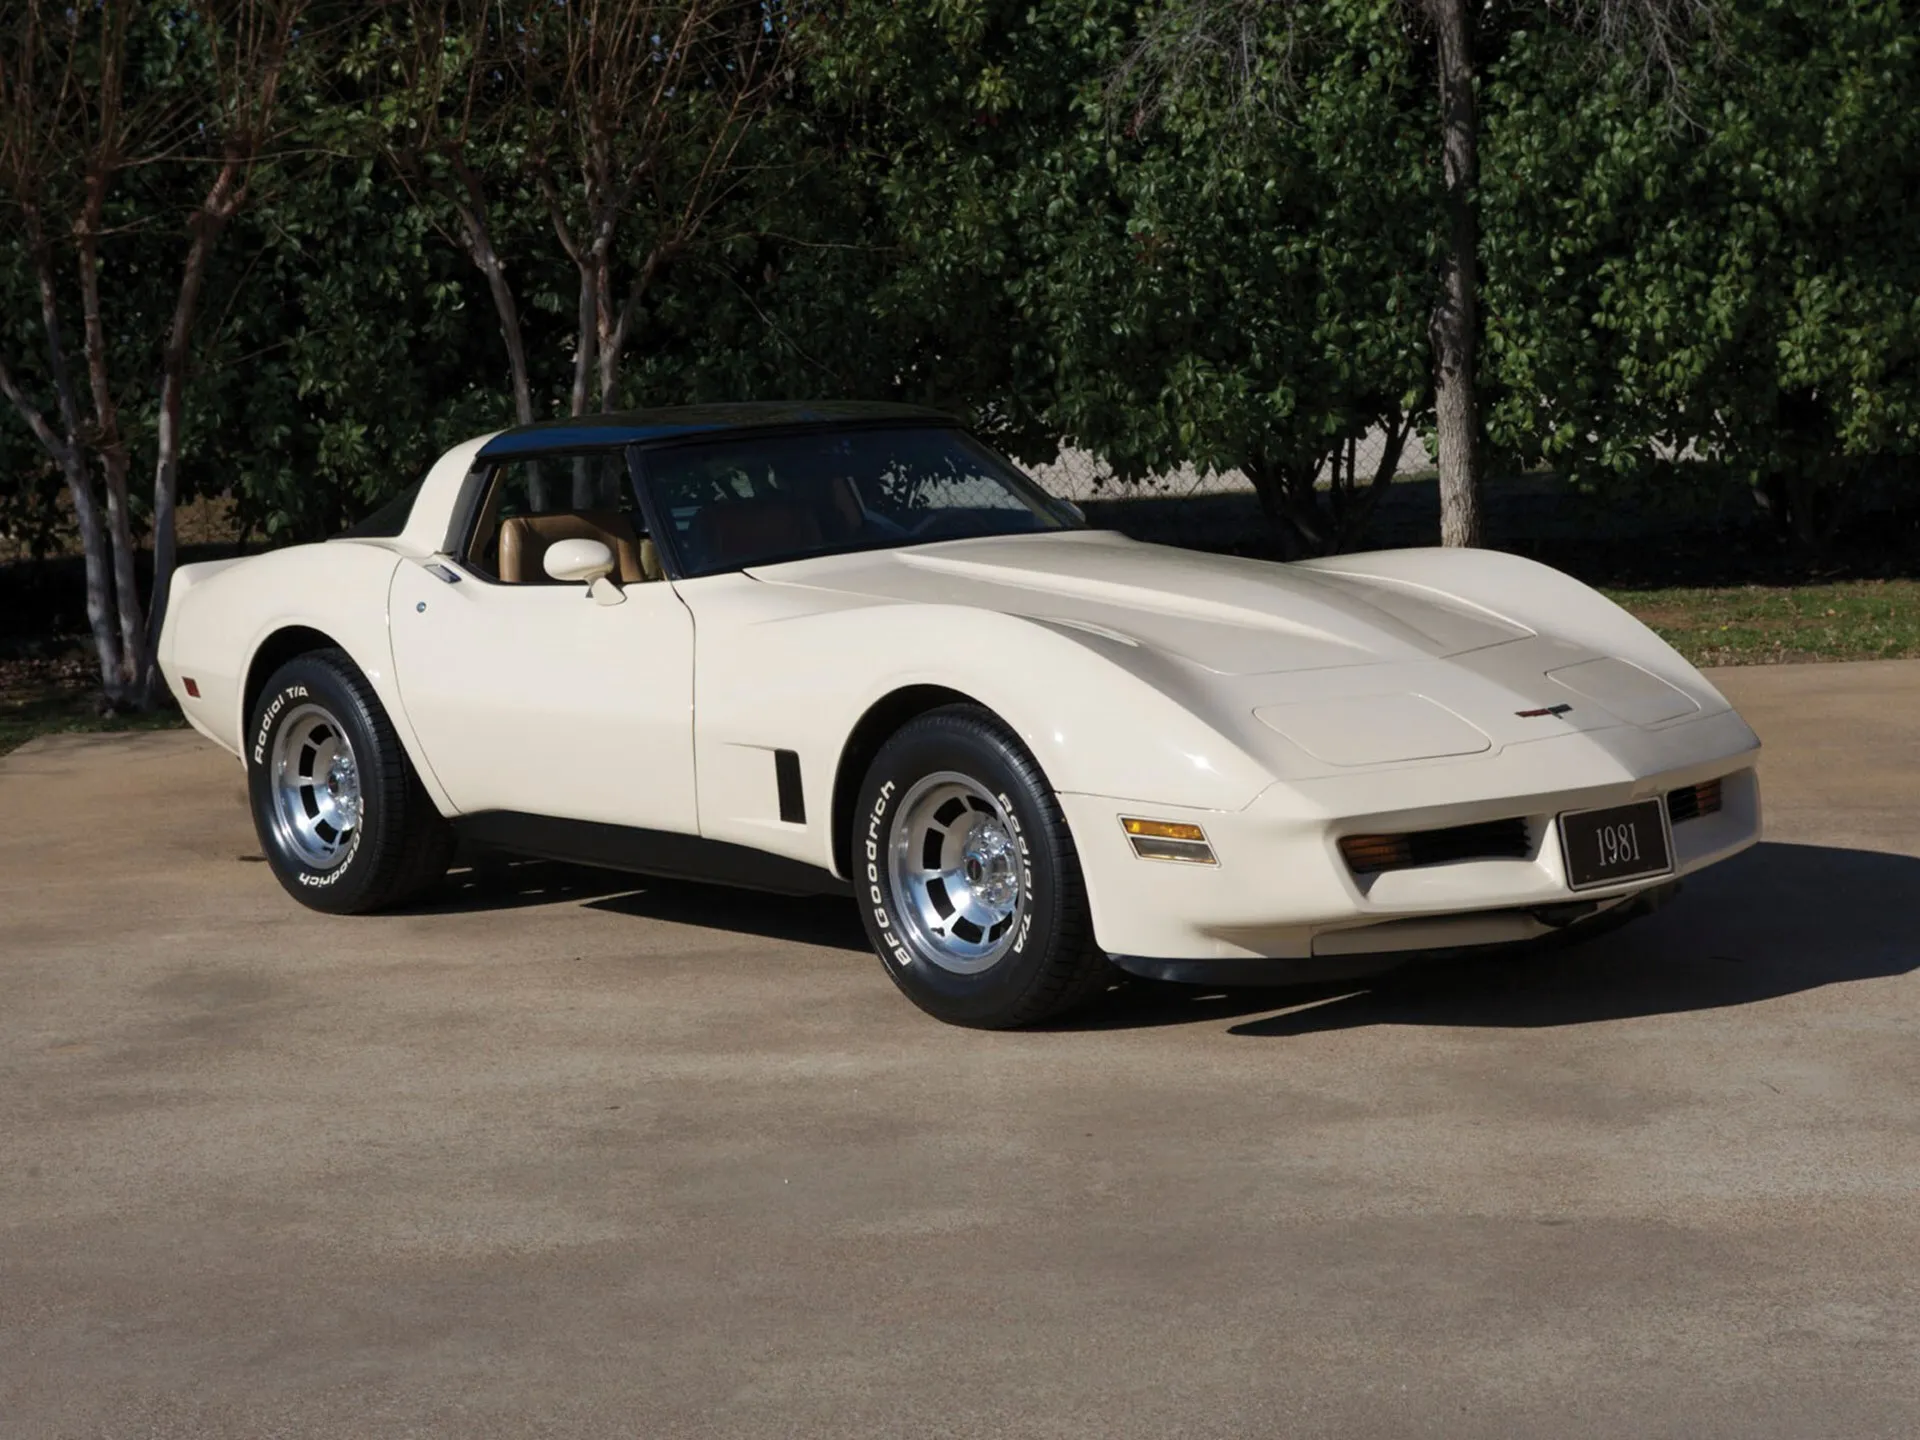 Corvette Of The Day: 1981 Chevrolet Corvette